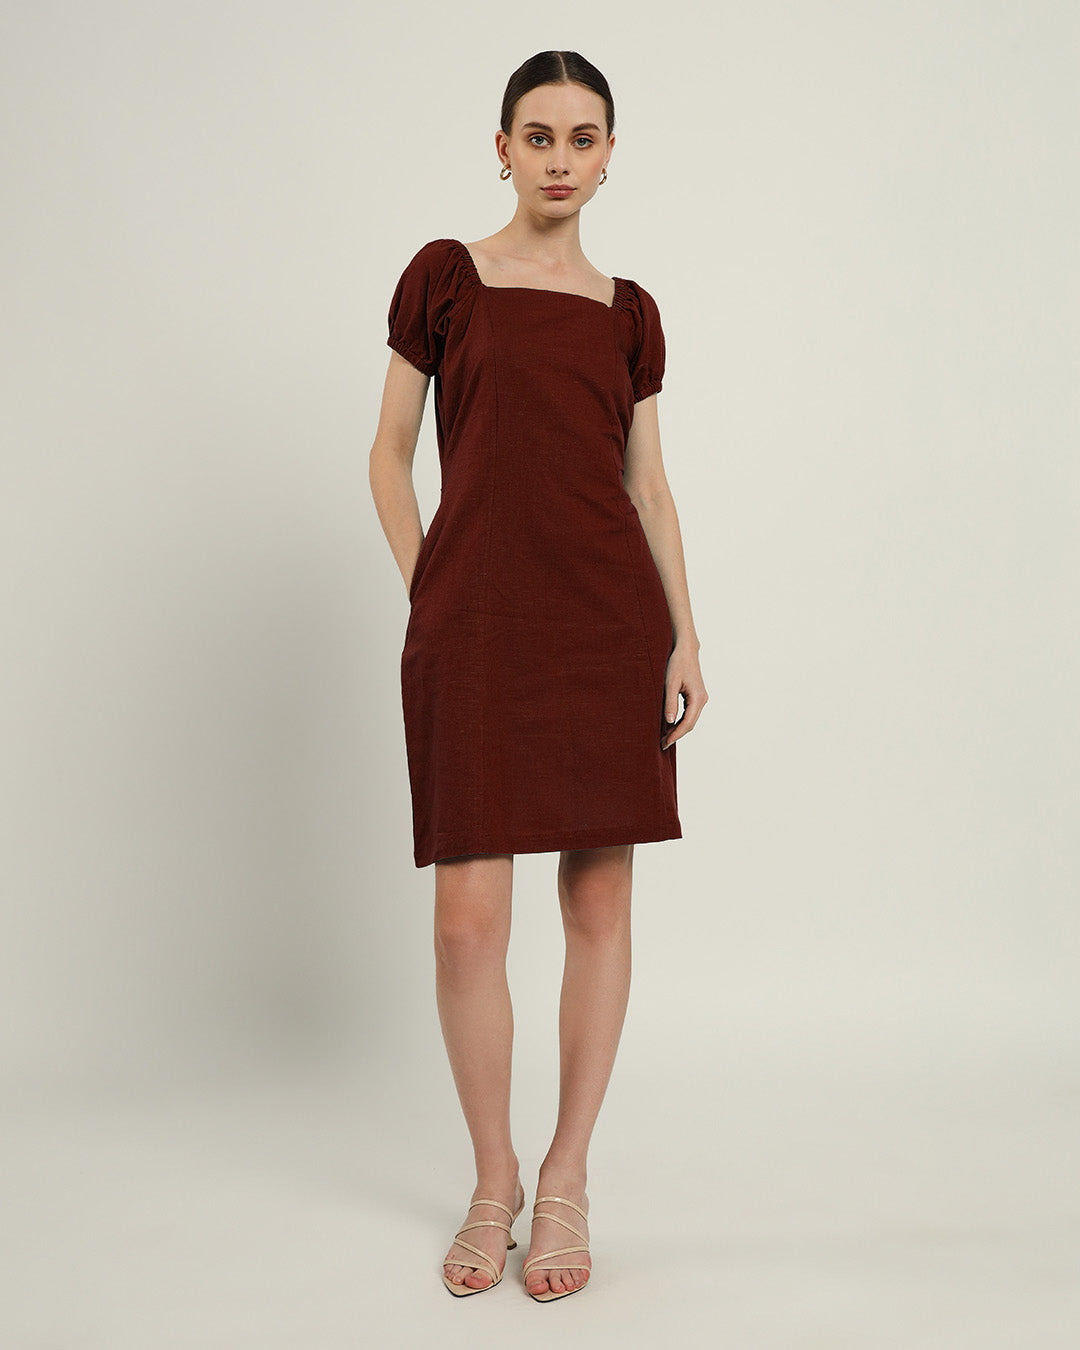 The Arar Rouge Cotton Dress